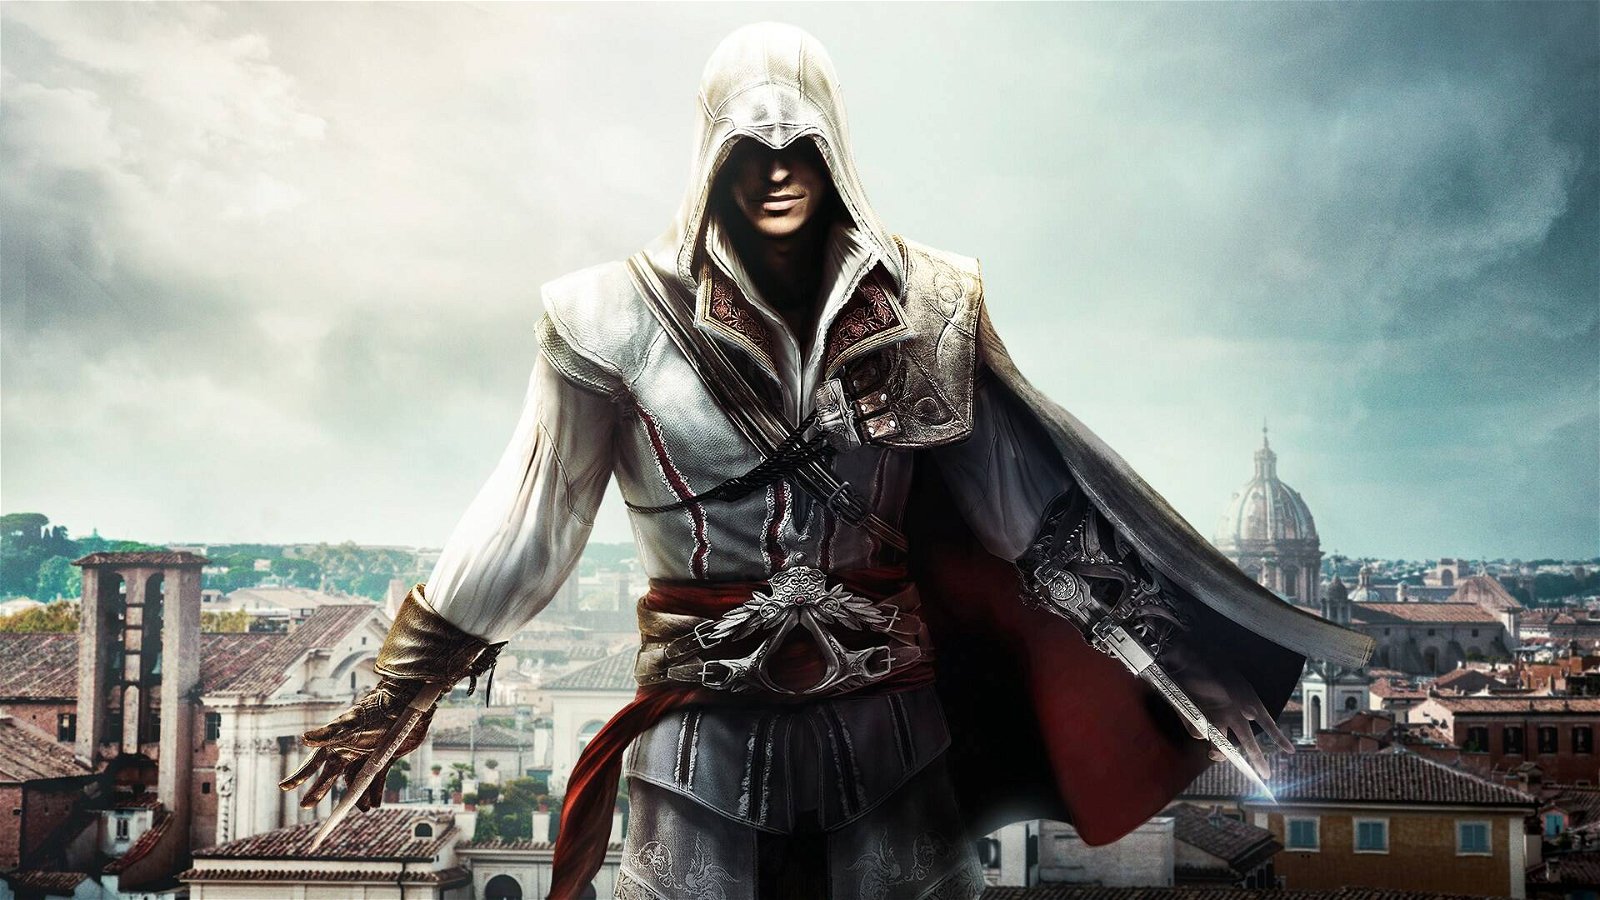 Immagine di Assassin's Creed arriva su mobile grazie a Netflix